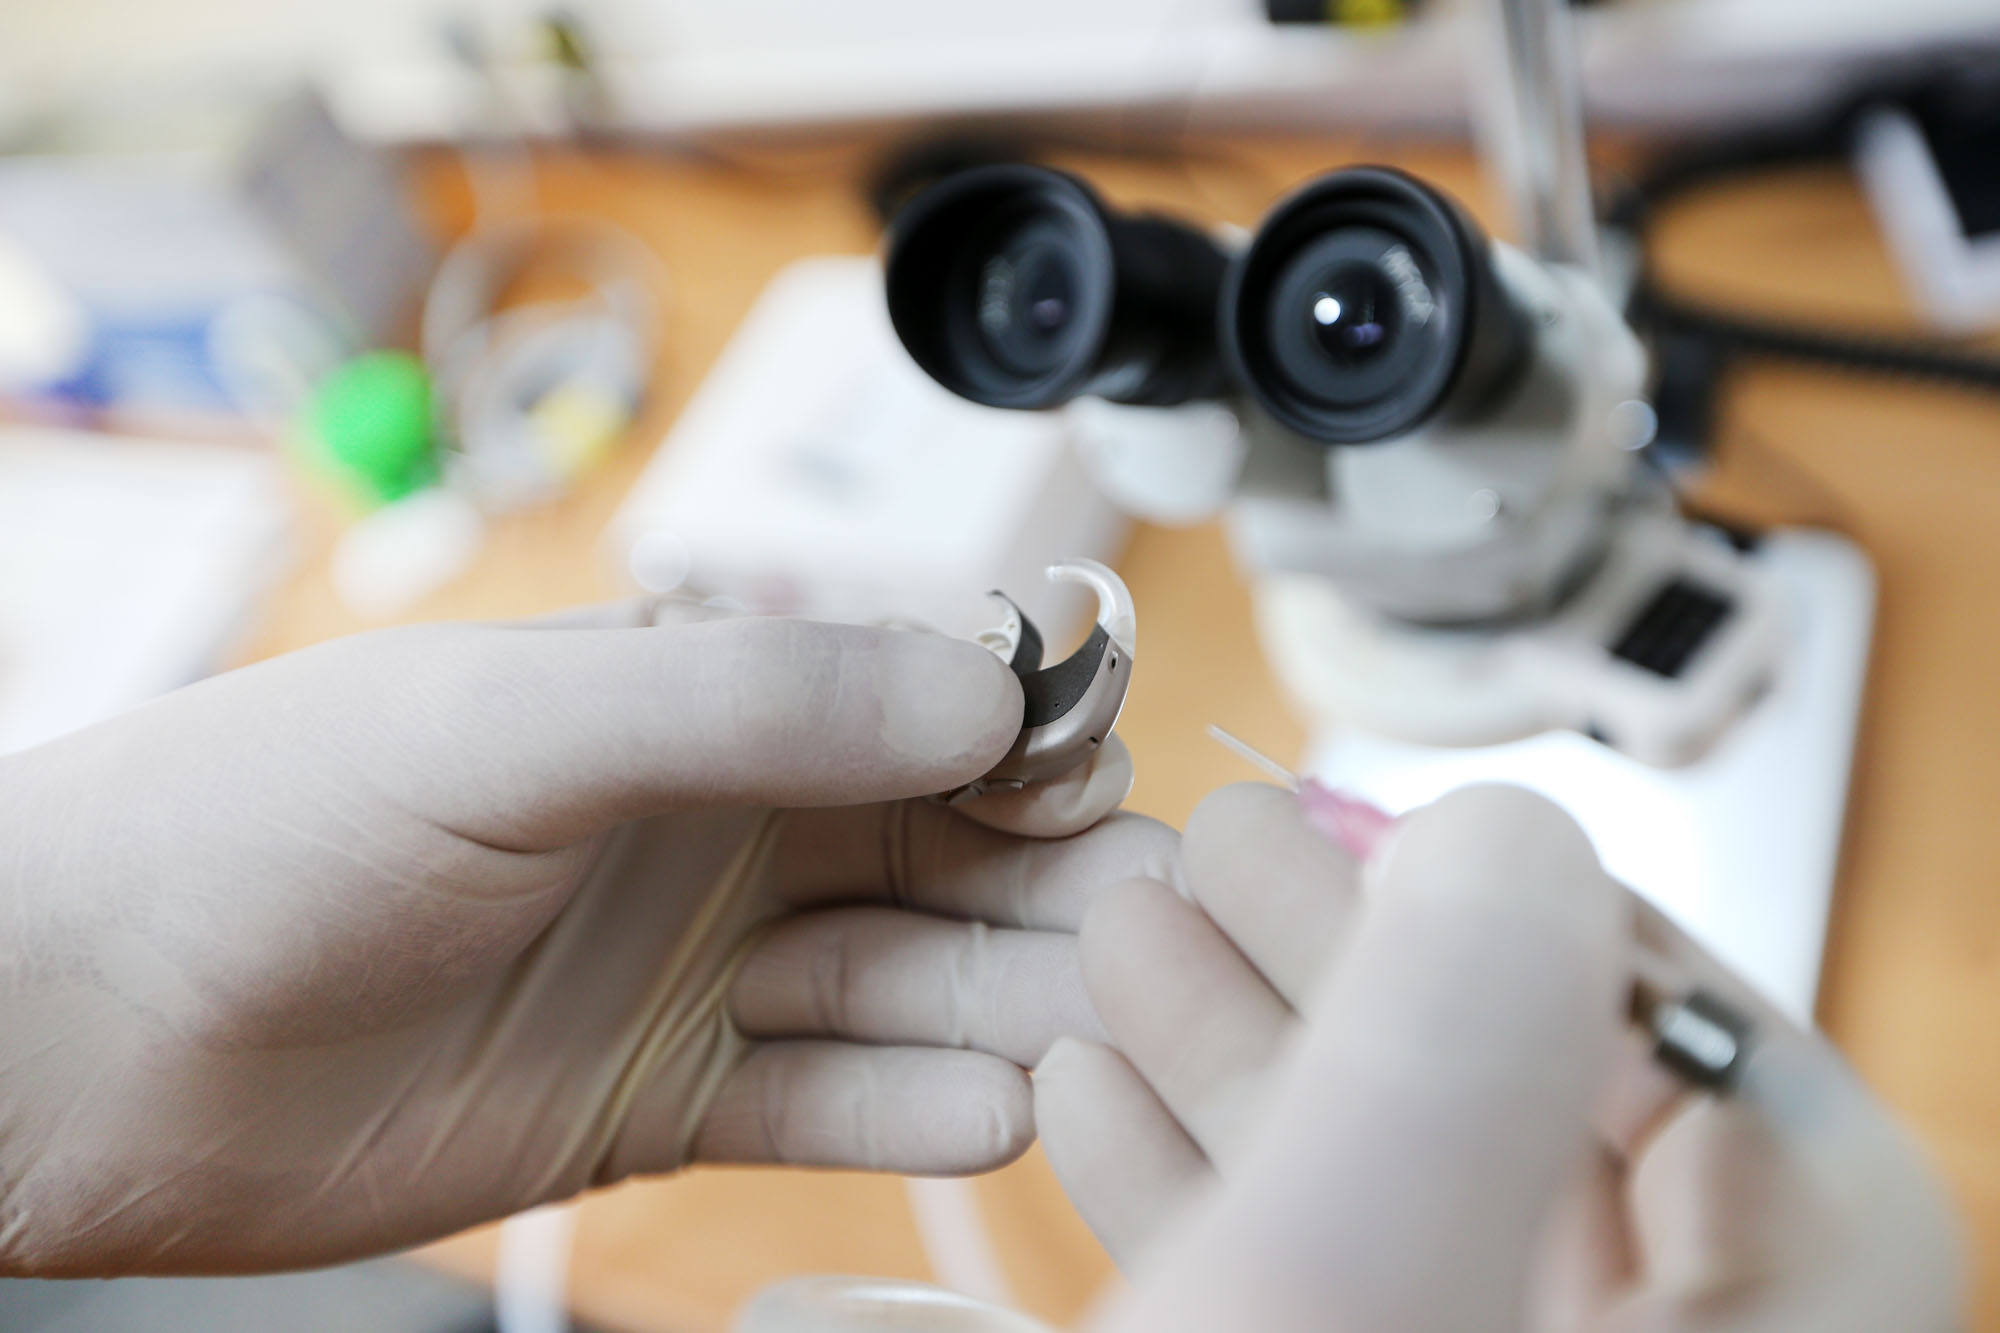 Hände mit Gummihandschuhen reparieren ein Hörgerät. Mikroskop im Hintergrund.